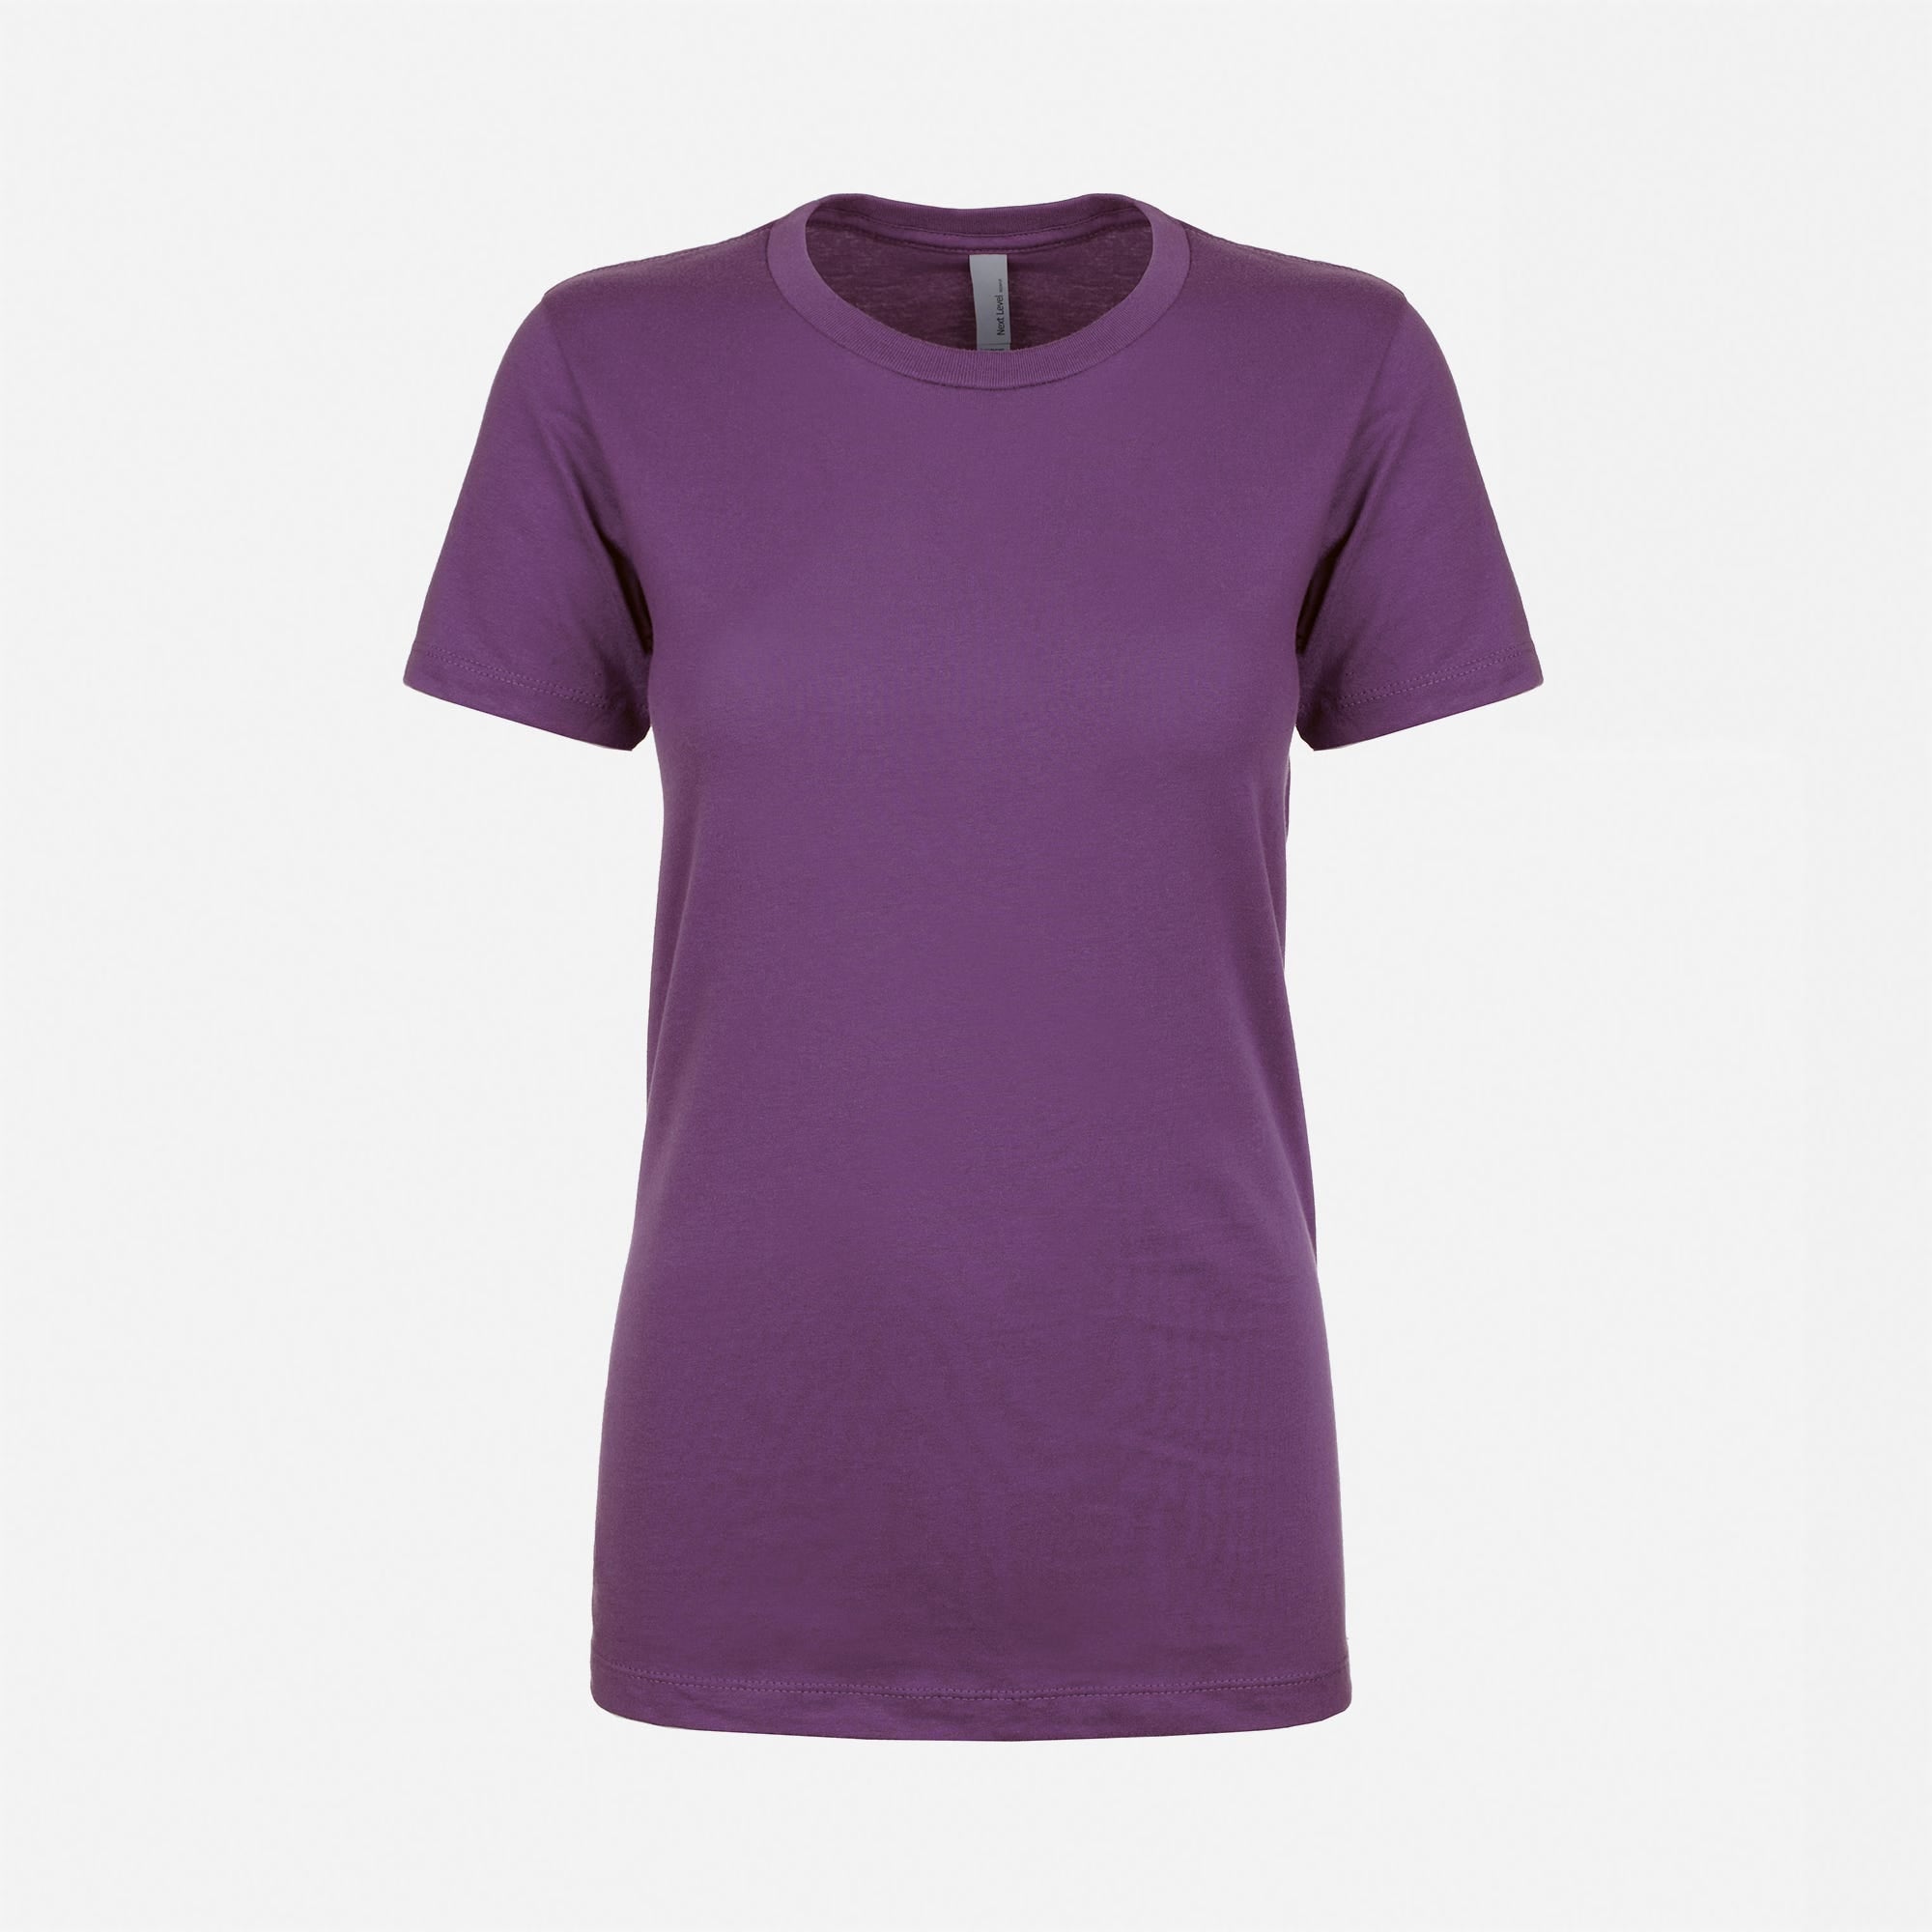 Cotton Boyfriend T-Shirt Purple Rush 3900 Next Level Apparel Sample Front View